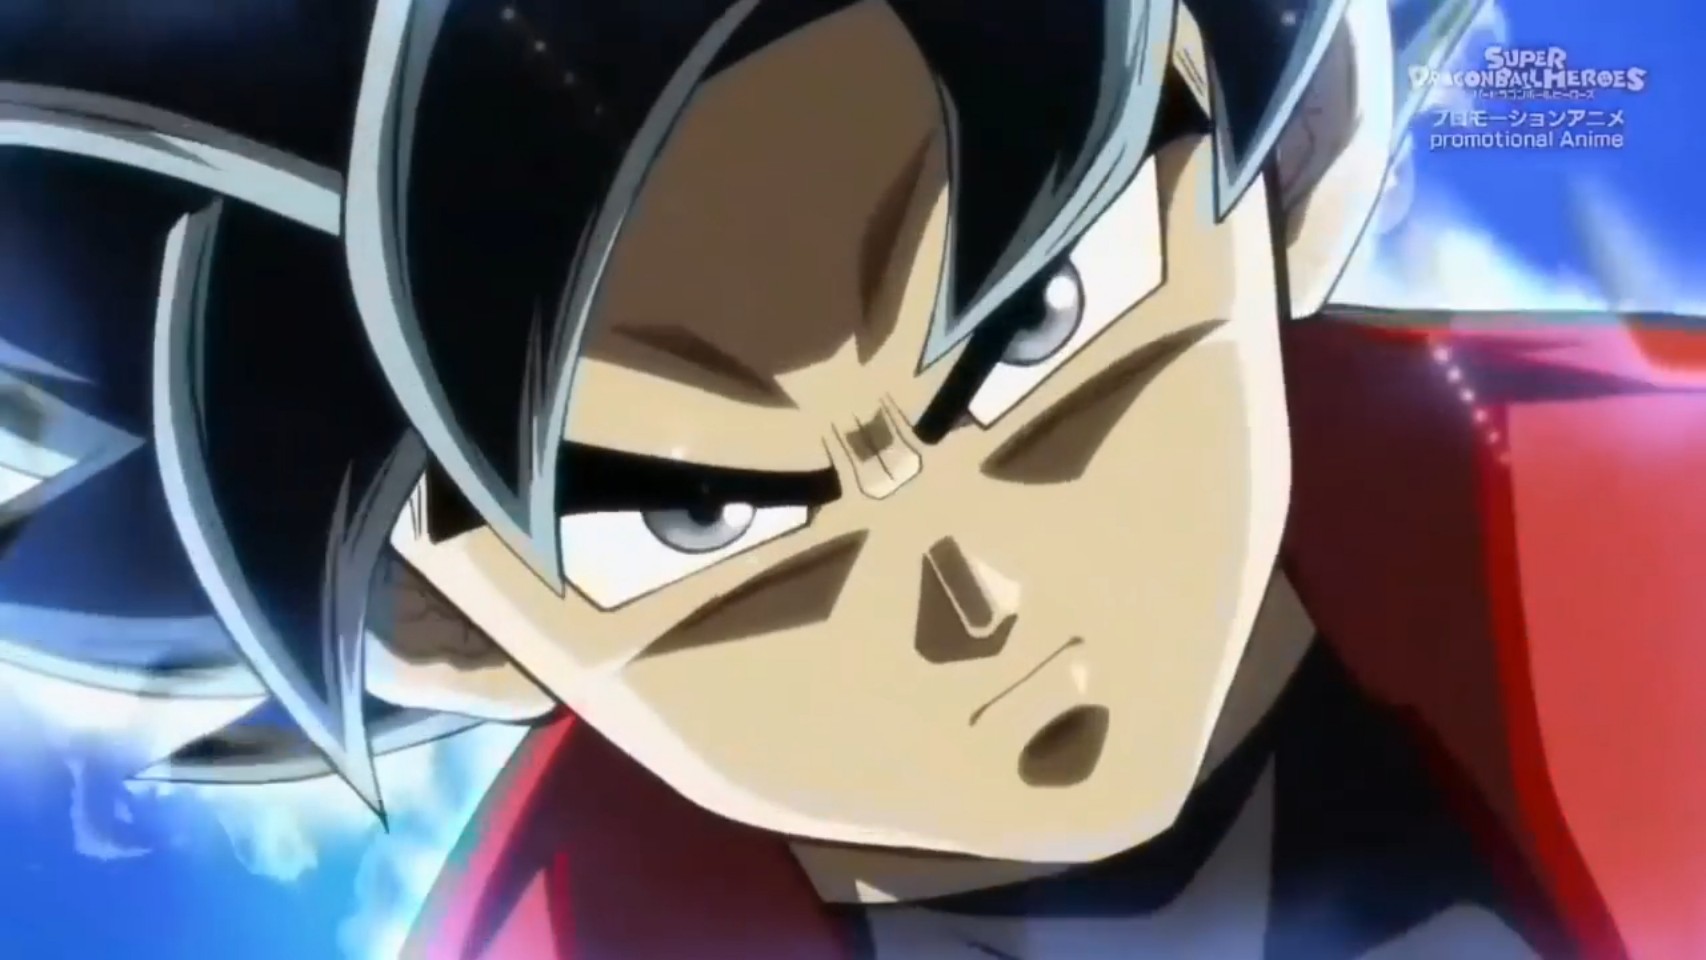 Giải thích nội dung tập đặc biệt của Super Dragon Ball Heroes, Goku và đồng bọn trở thành nhân vật game được triệu hồi - Ảnh 5.